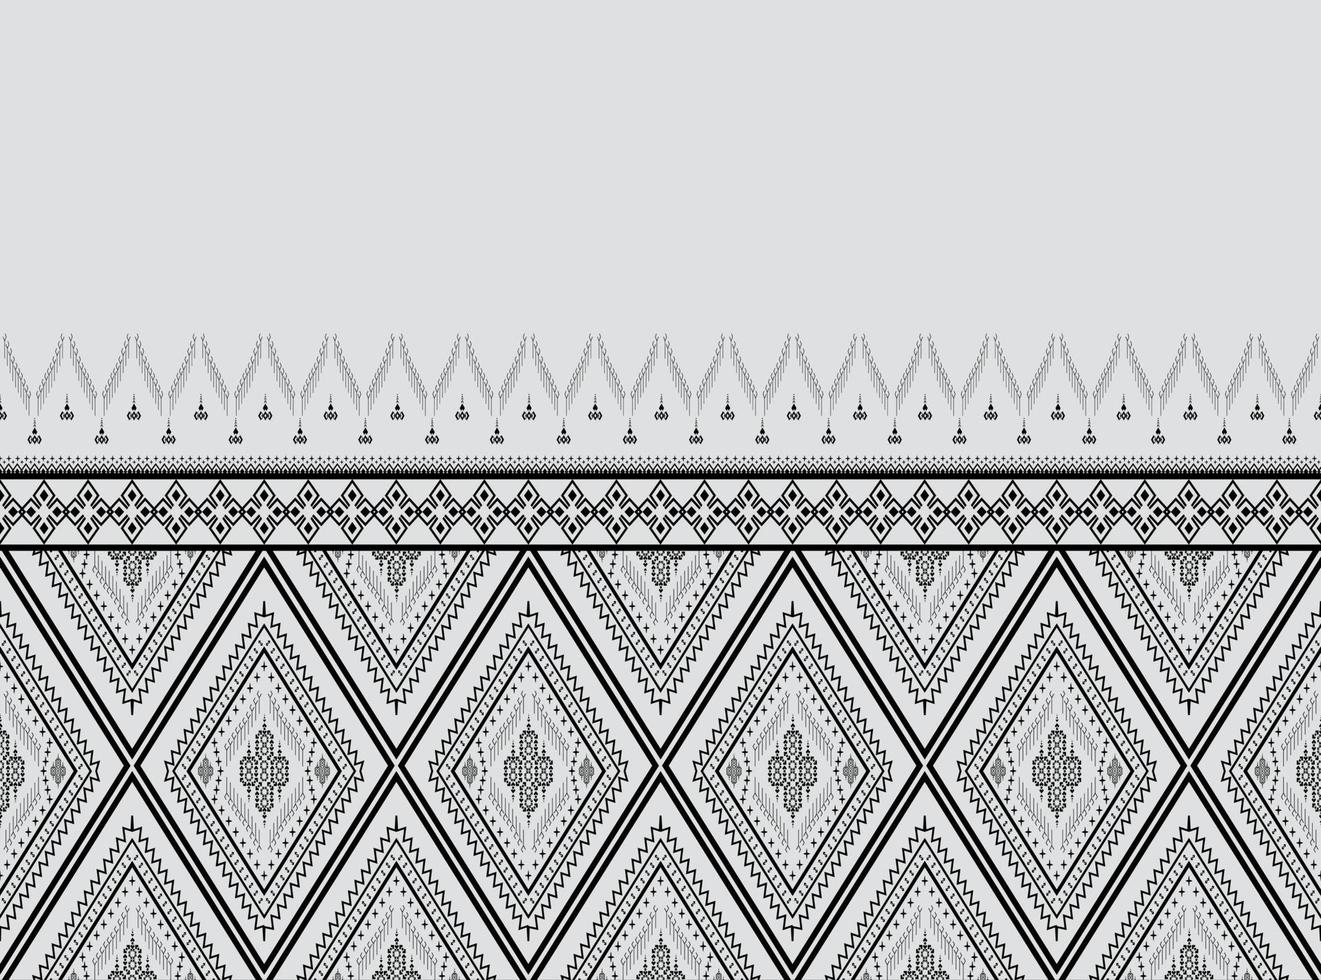 geometrische etnische patroon borduurwerk ontwerp voor achtergrond of behang en kleding,rok,tapijt,behang,kleding,inwikkeling,batik,stof,kleding, met donkerblauwe driehoek vector illustratie